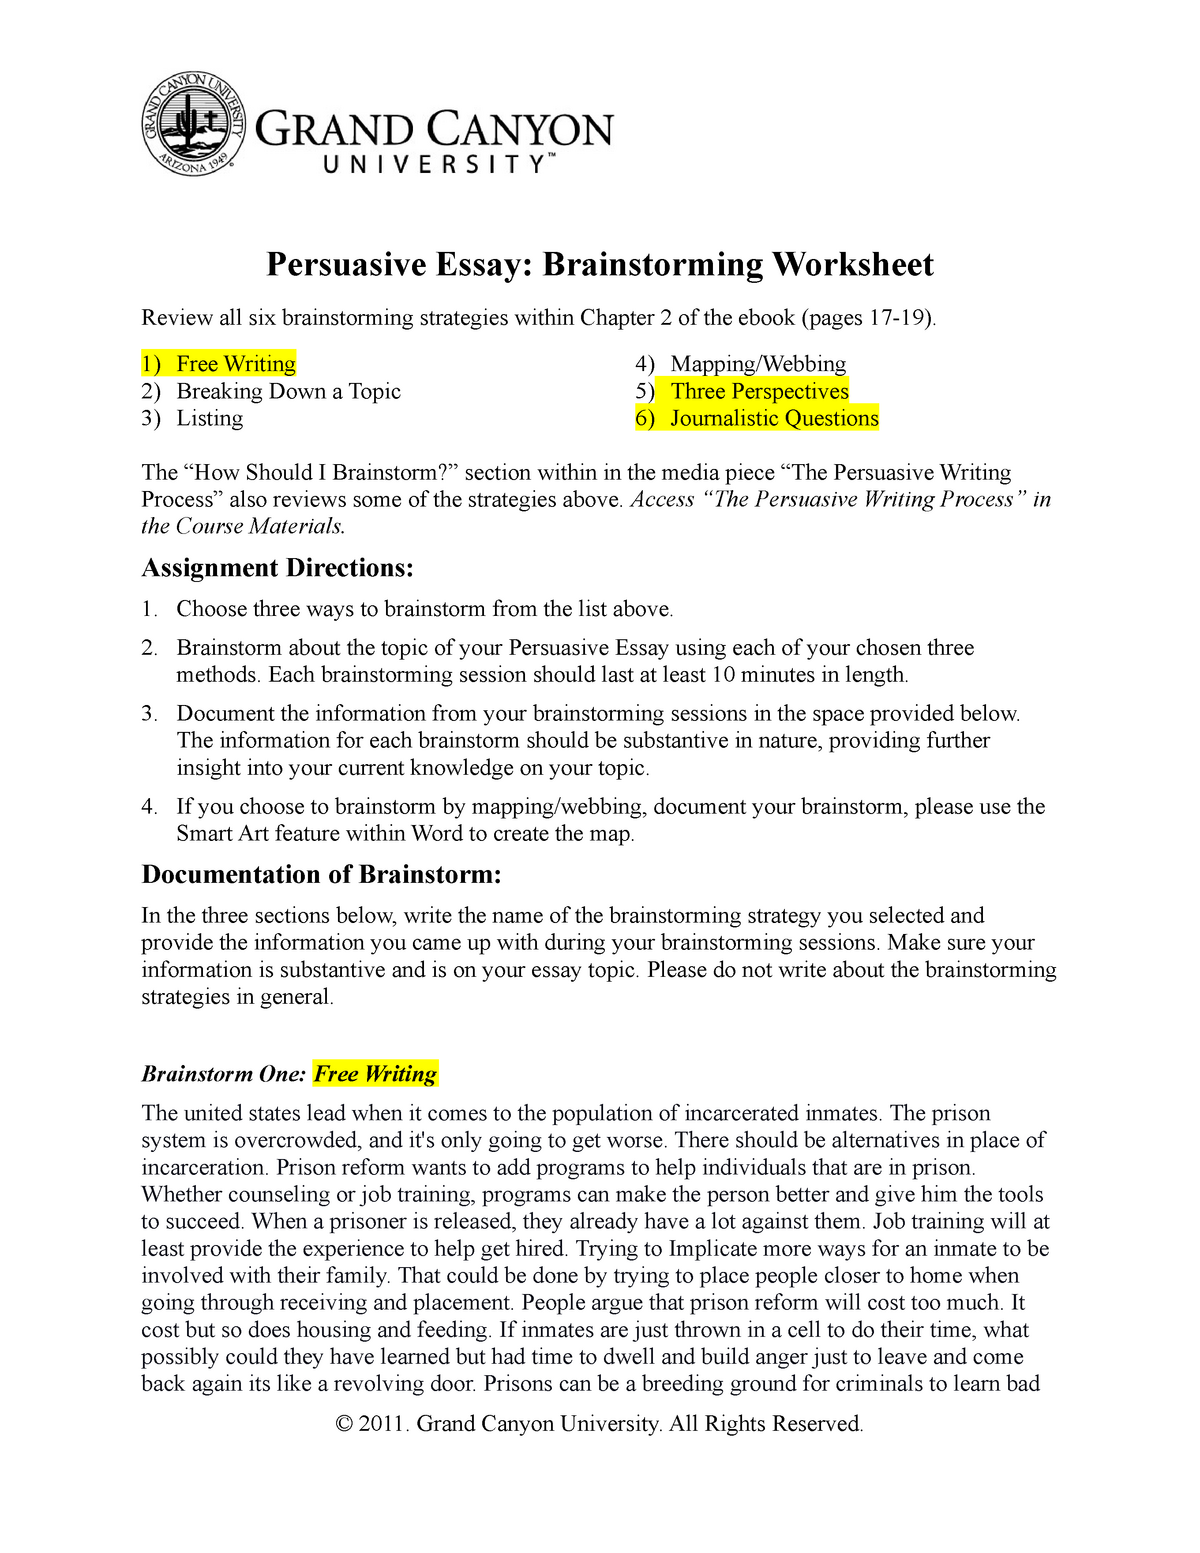 brainstorming college essay worksheet